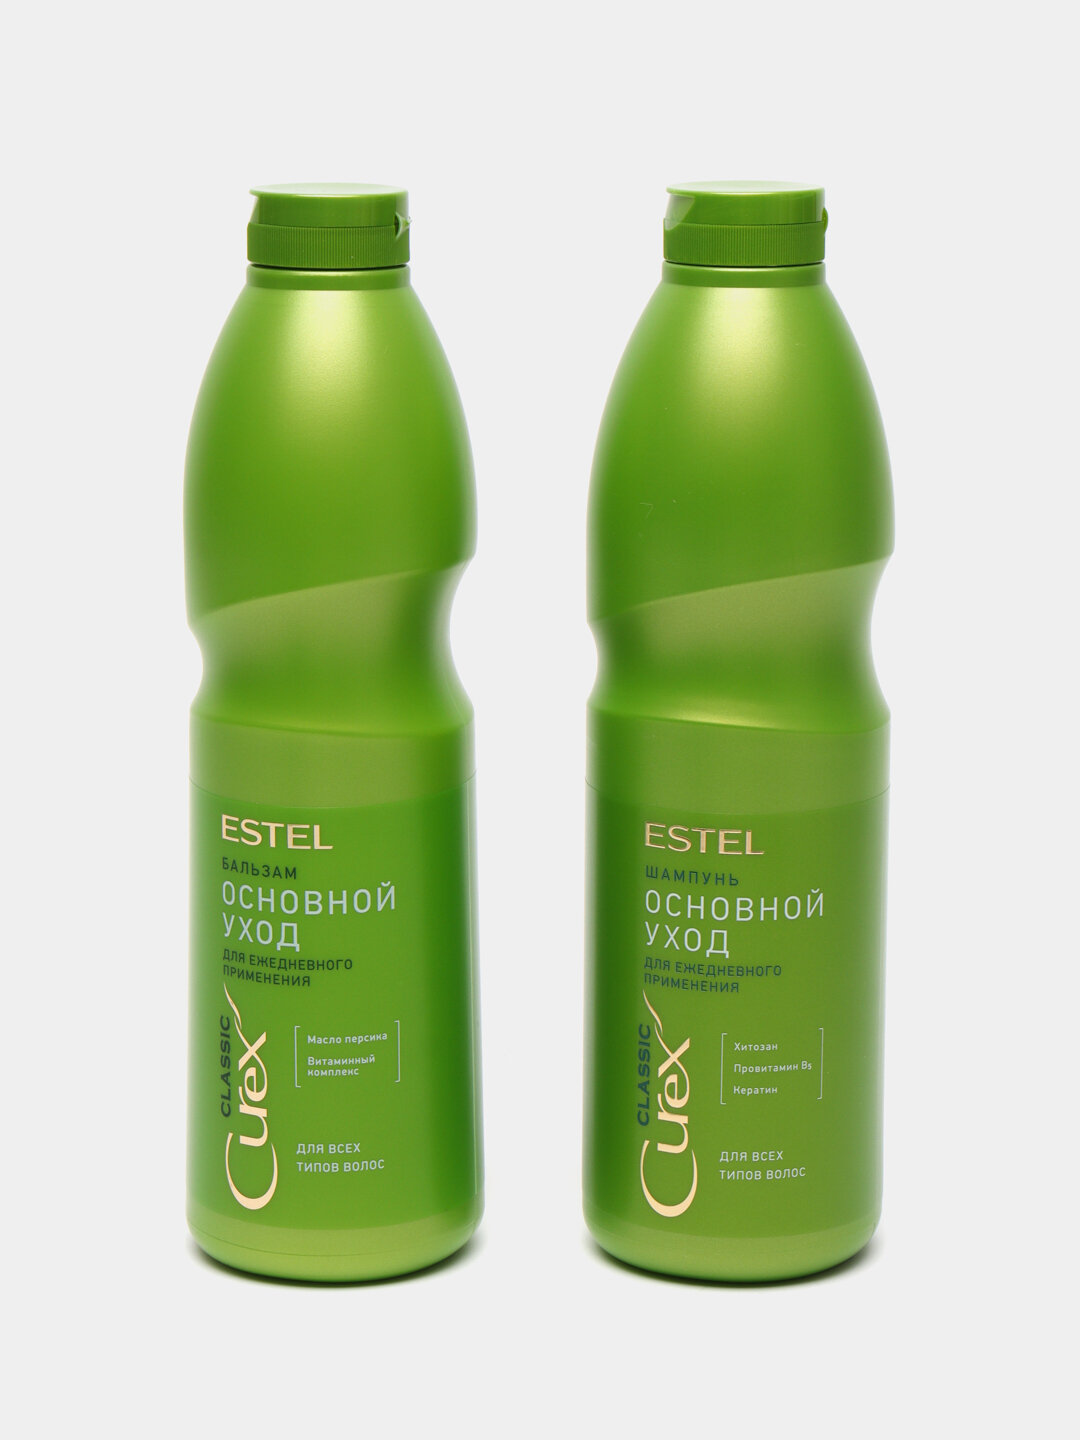 Комплект ESTEL "Основной уход" для ежедневного применения CUREX CLASSIC для всех типов волос (шампунь 1000мл + бальзам 1000мл)